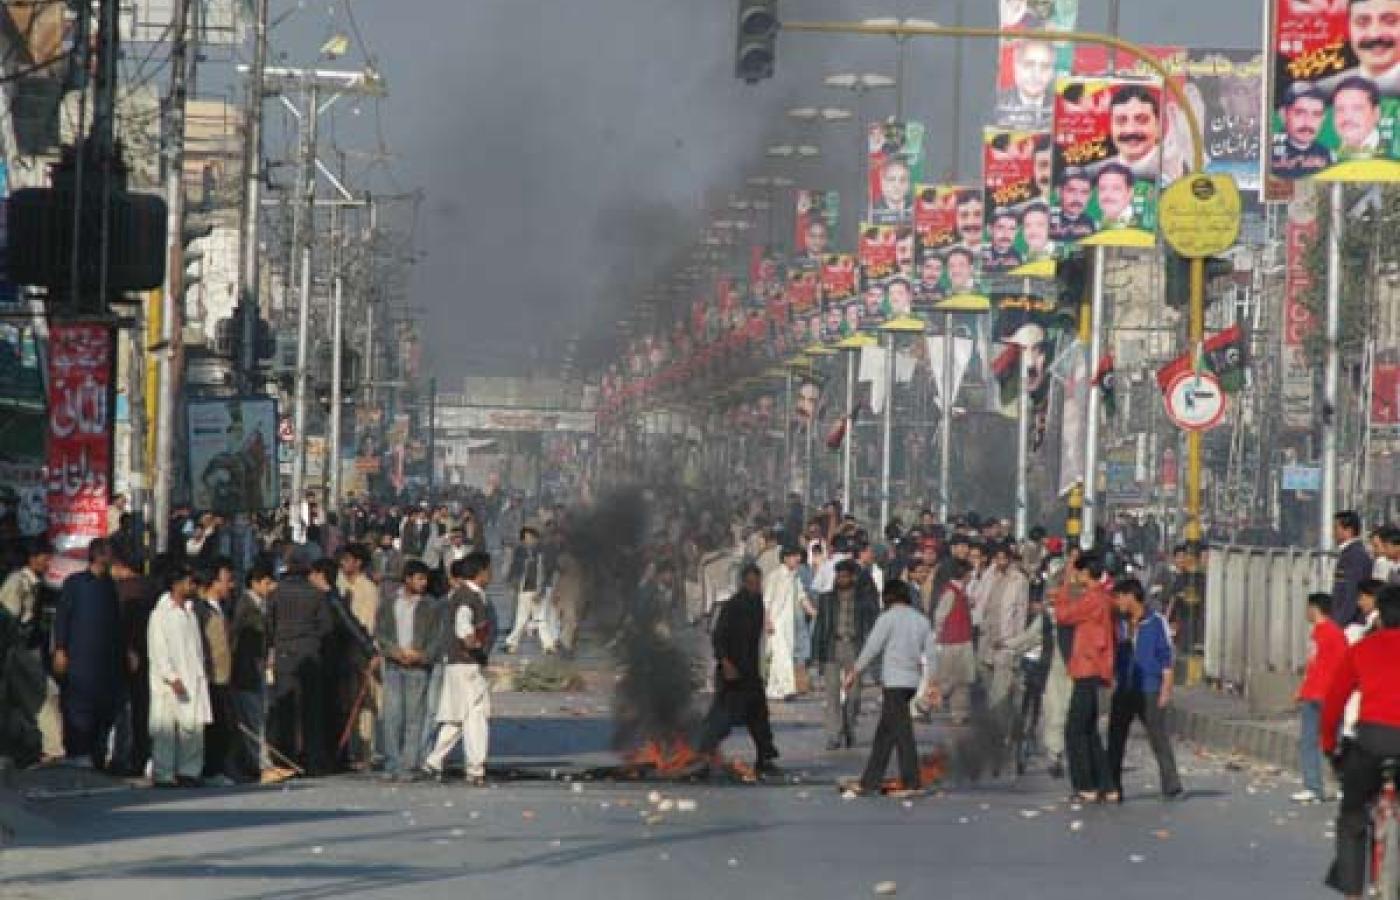 Zamieszki na ulicach w Islamabadzie po zamachu na Benazir Bhutto. Fot. S.A.Qureshi/ GAMMA/ Eyedea